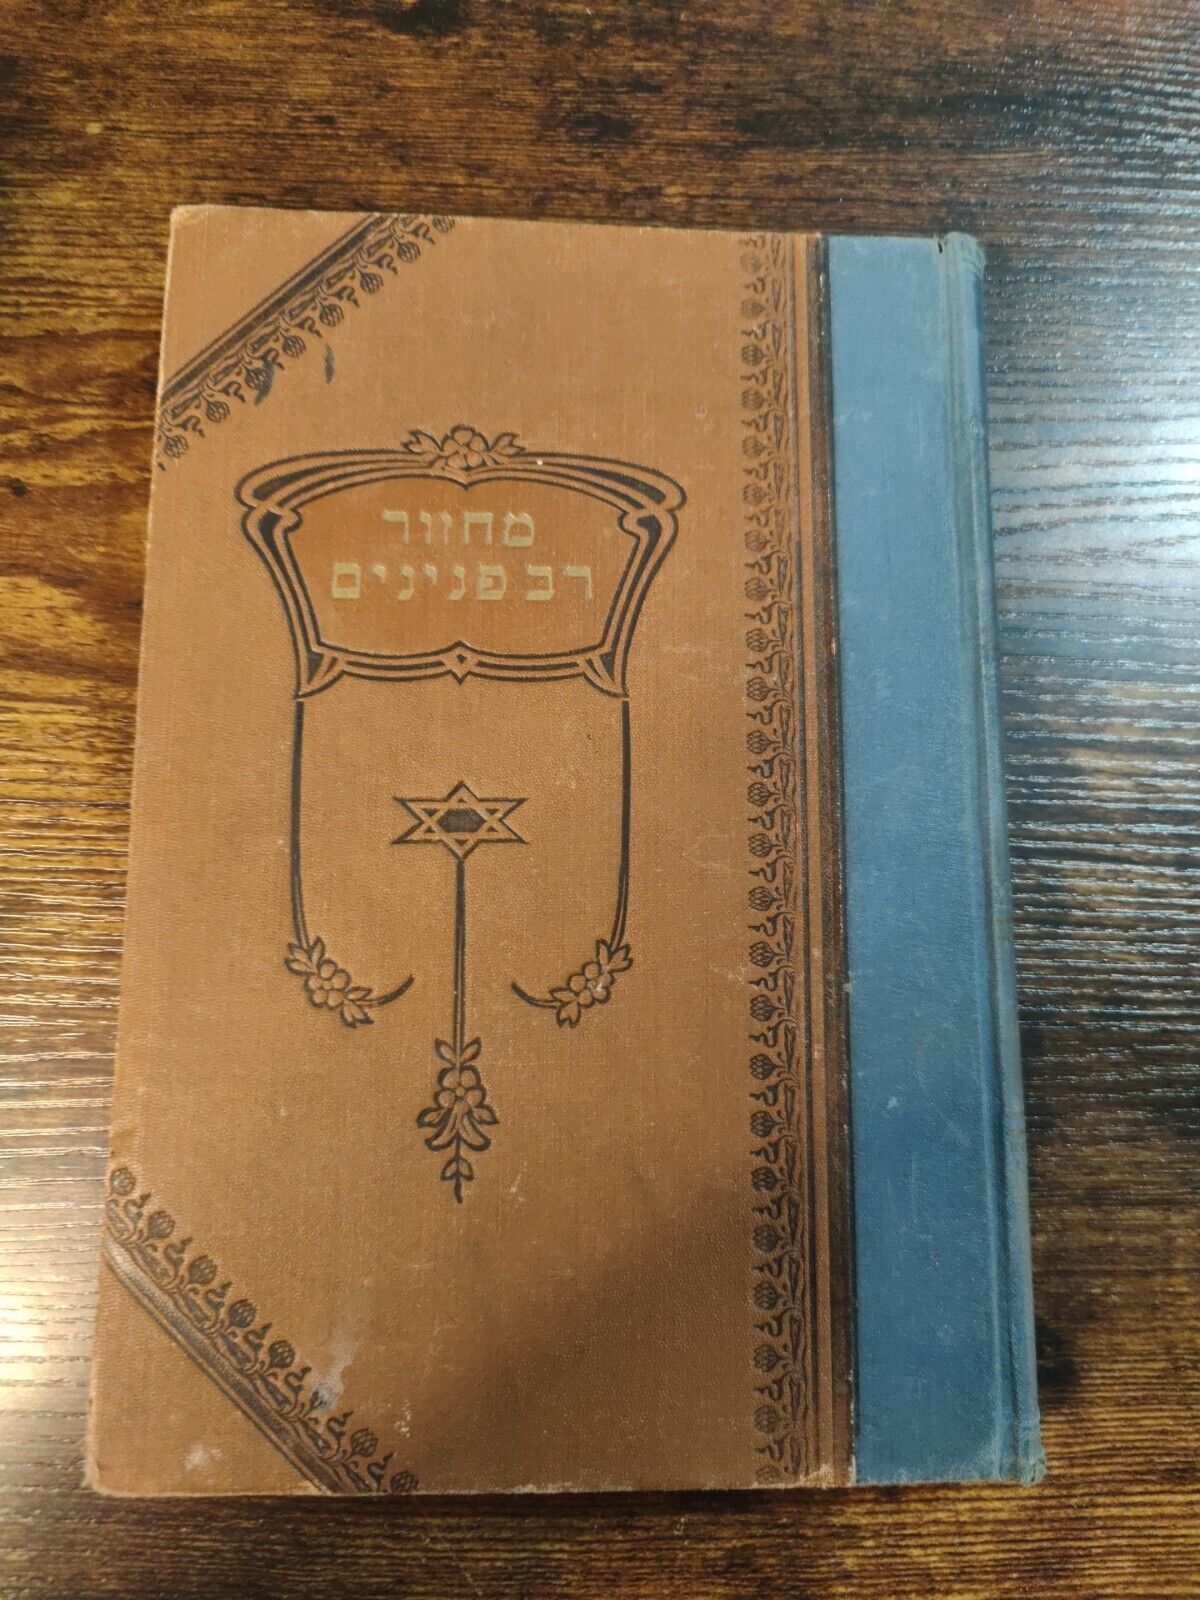 1924 Vintage Hebrew Book: מִיט פיער הוּנְדֶערְט צְוִויי אוּן מֶערְצִין מַעֲלוֹת